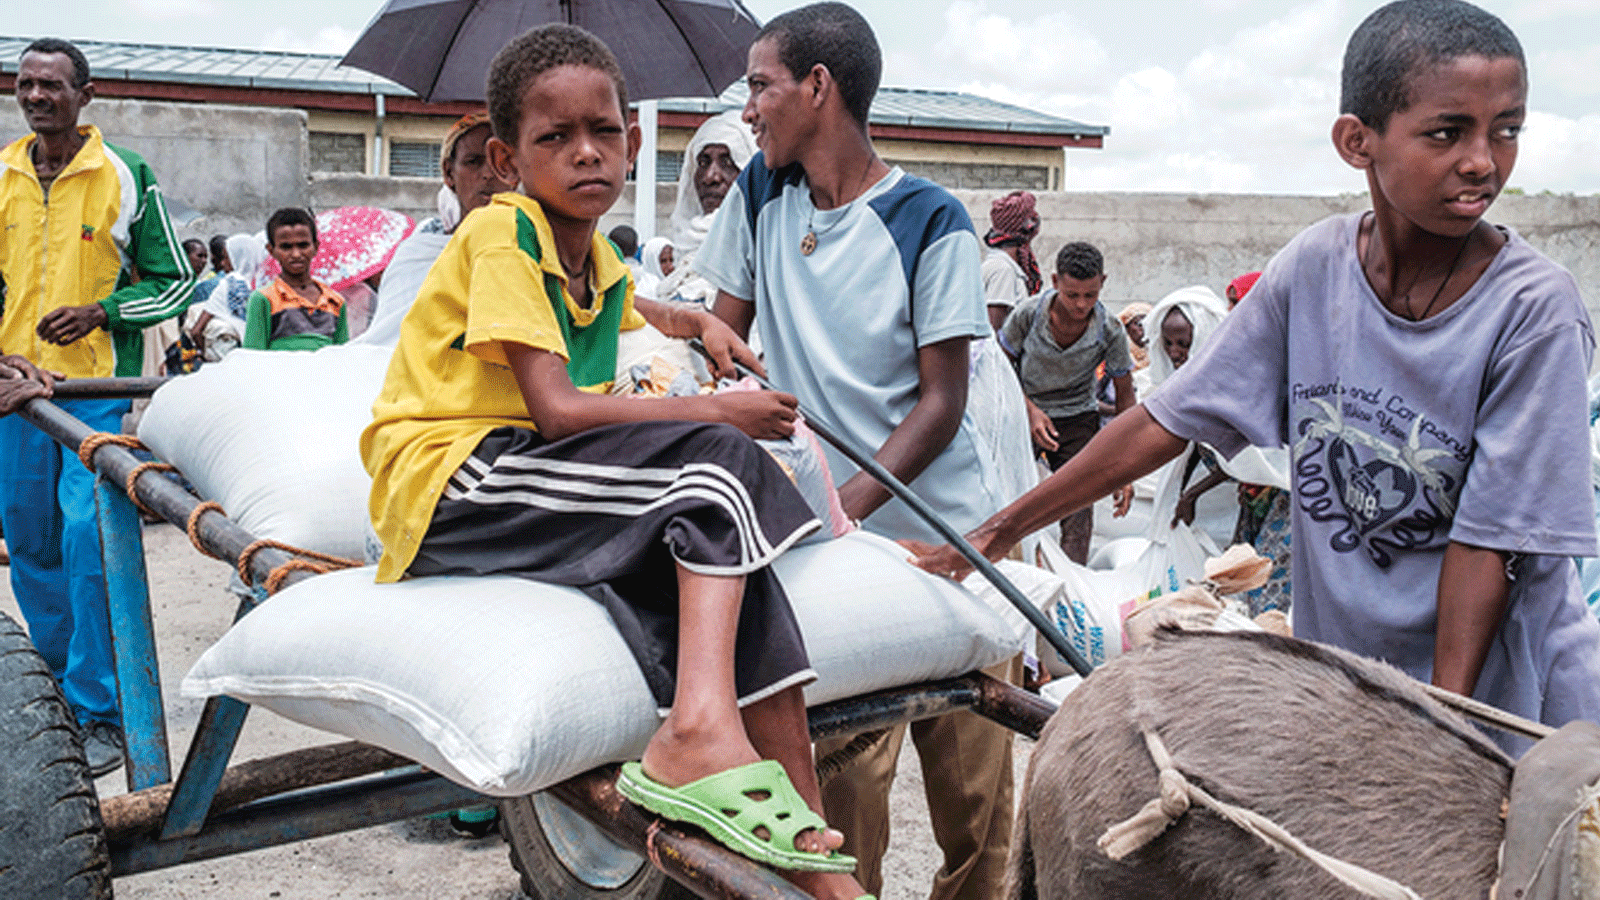 أطفال ينتظرون بجوار أكياس قمح عند نقطة توزيع أغذية بالقرب من قرية بيكر، على بعد 50 كيلومترًا جنوب شرق حميرة، في منطقة تيغراي في إثيوبيا.